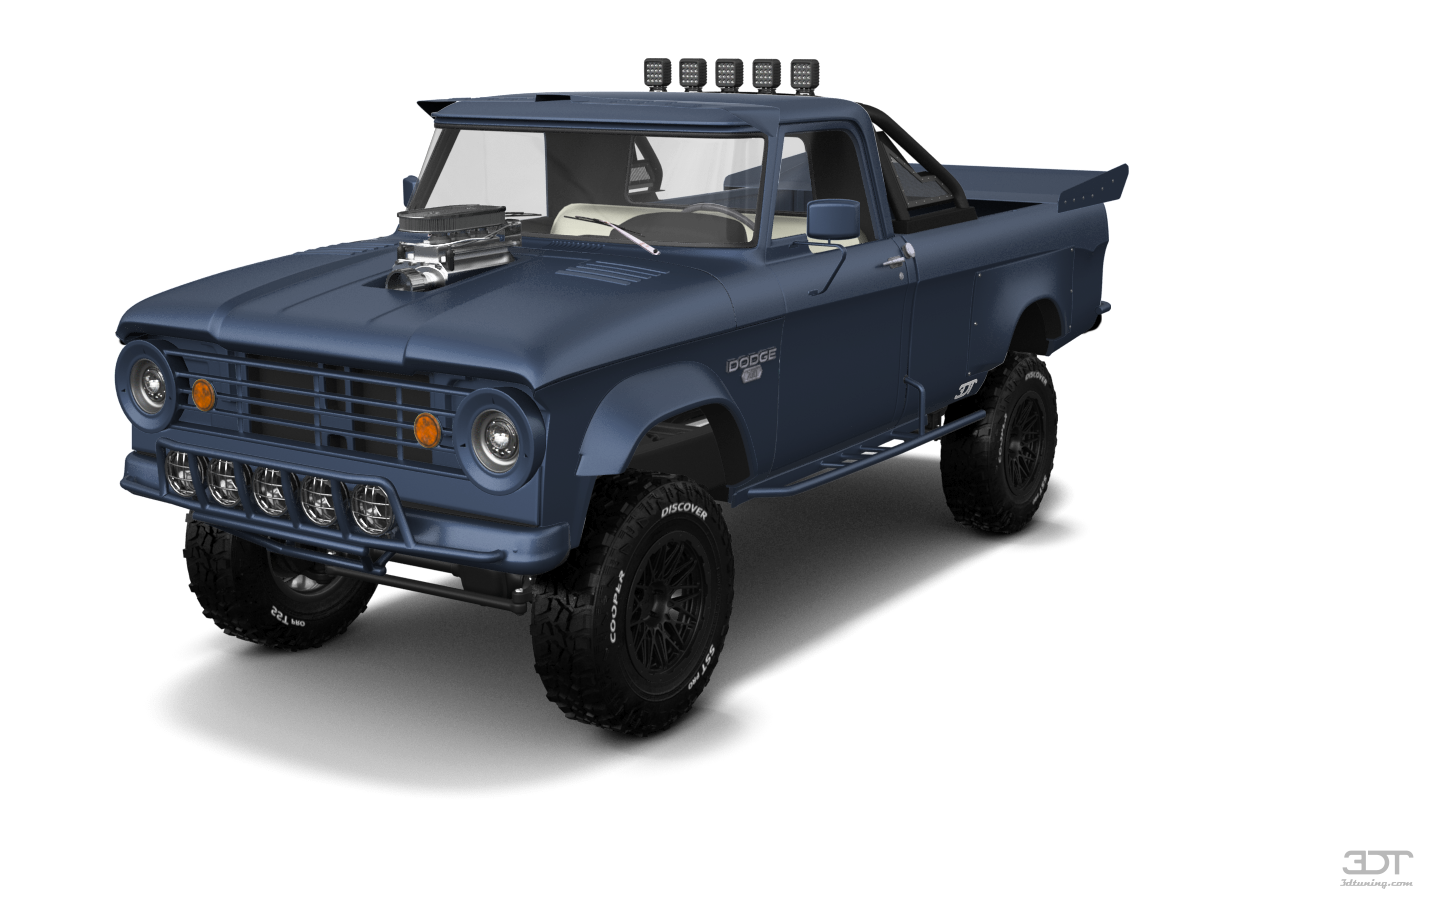 Dodge Power Wagon W200 2 Door pickup truck 1966